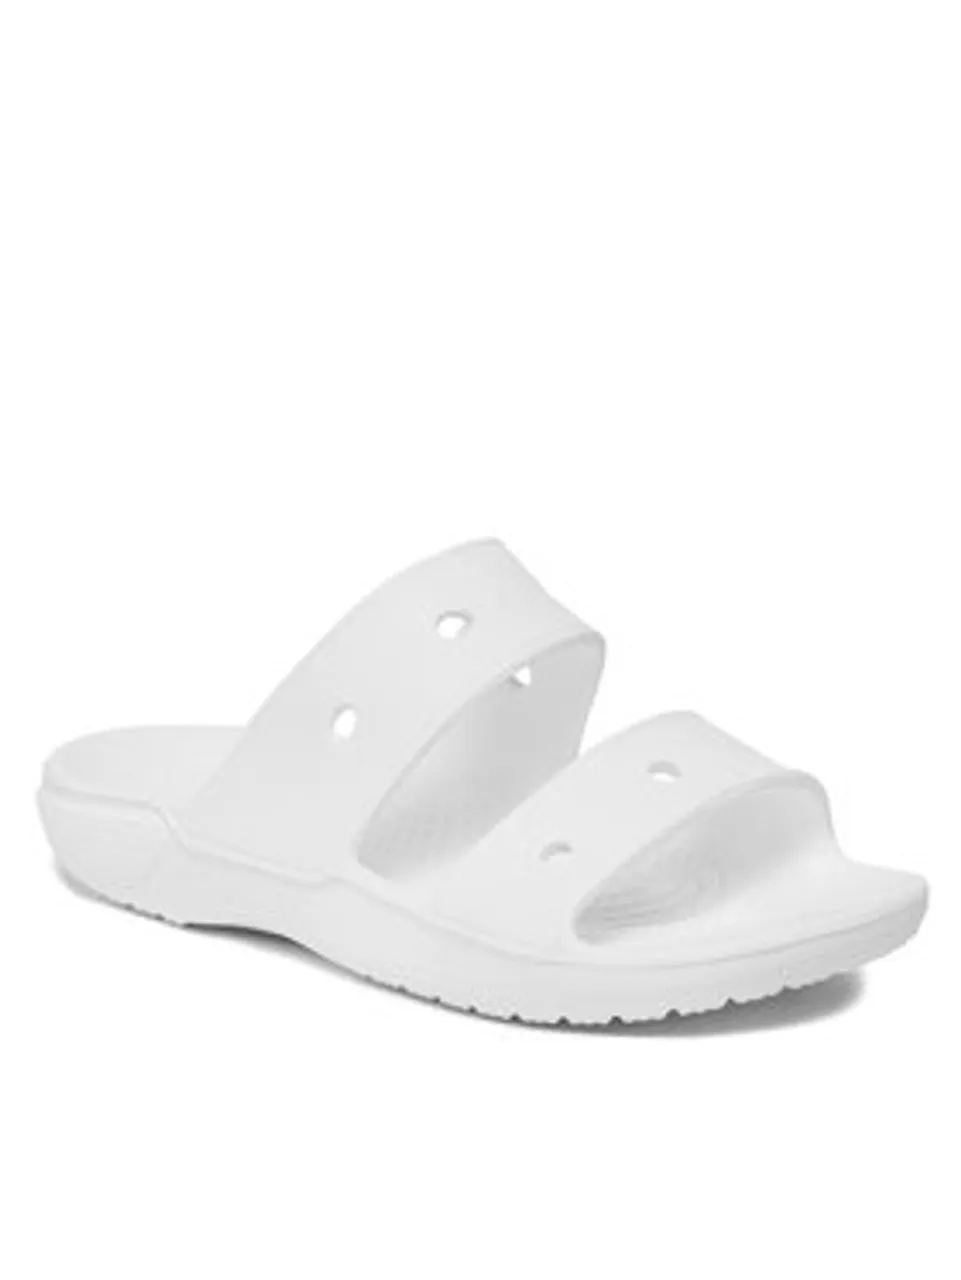 Crocs Pantoletten Classic Crocs Sandal 206761 Weiß